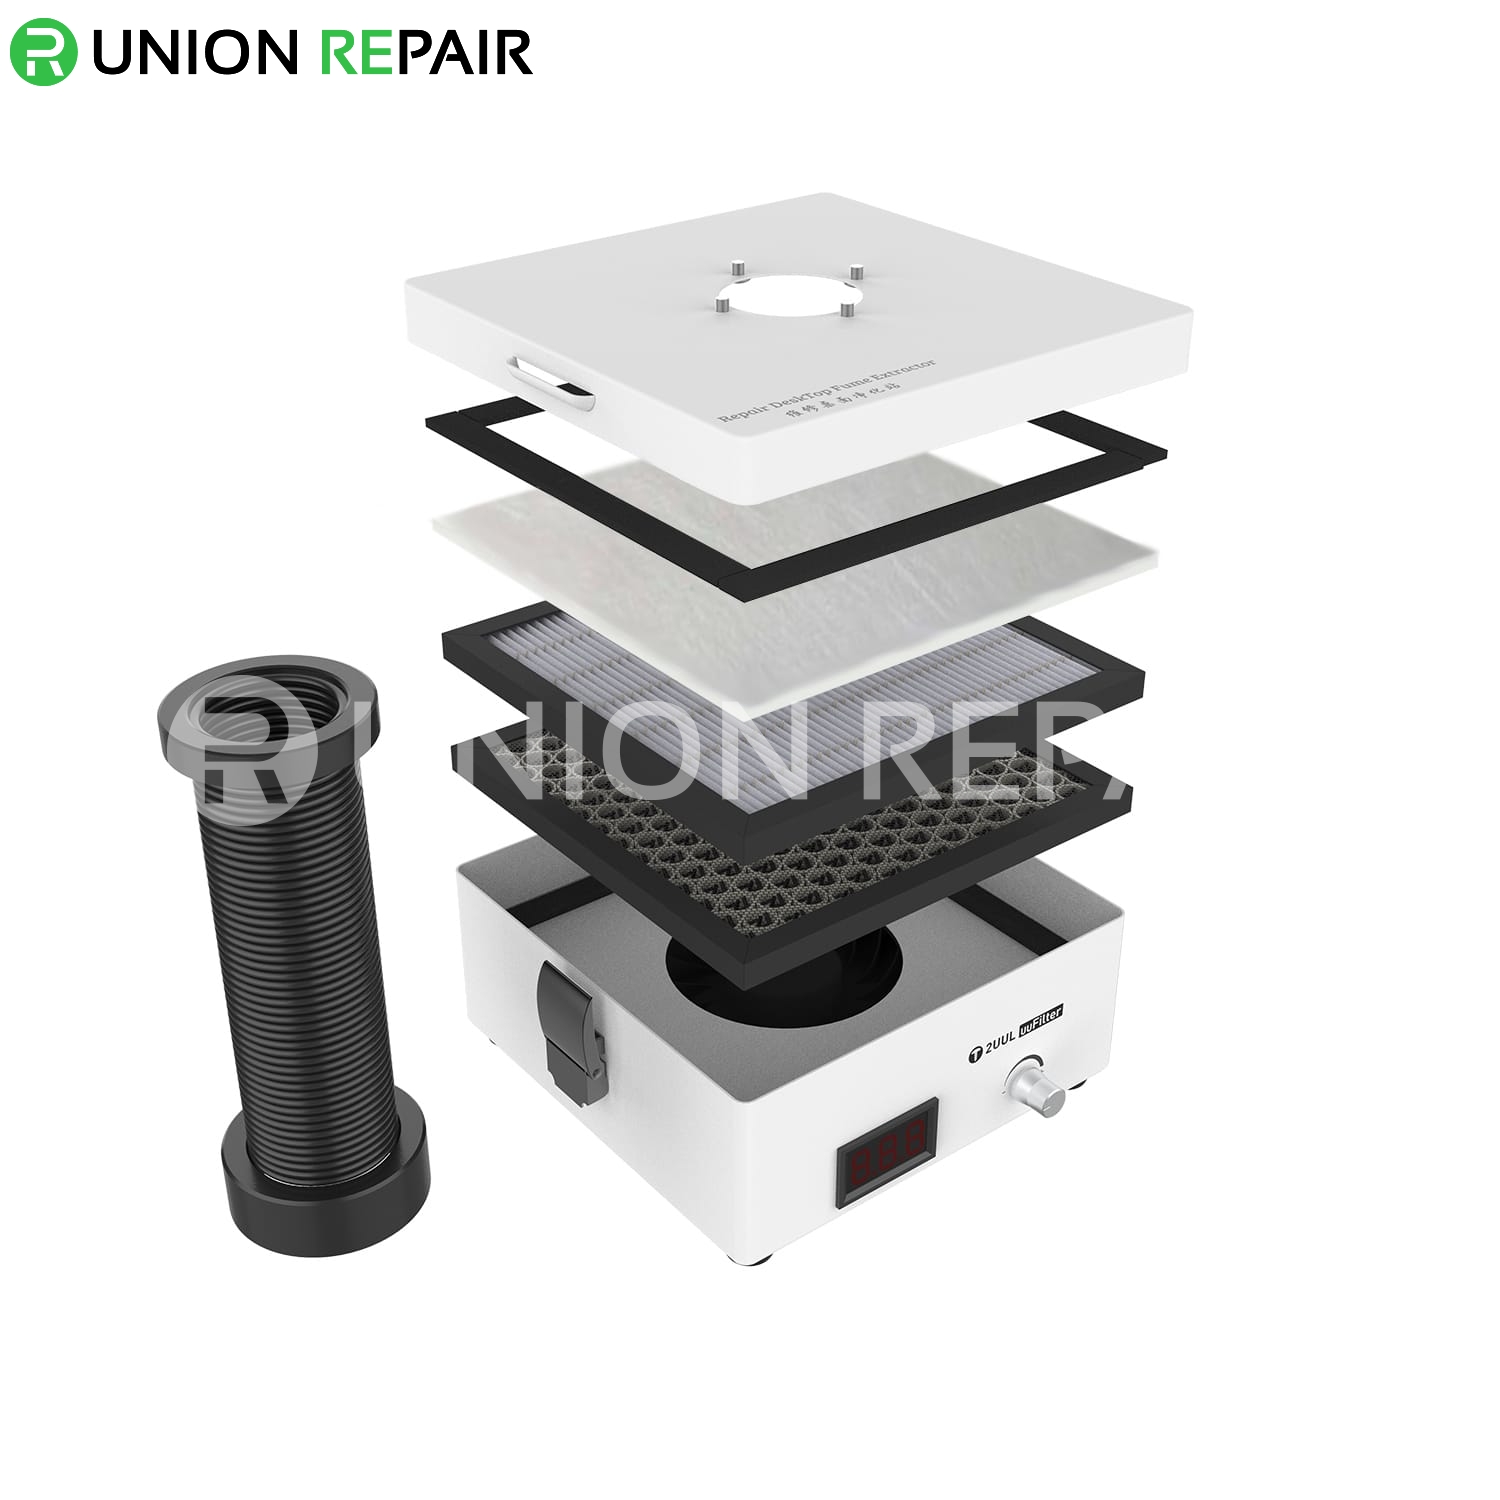 2UUL uuFilter DeskTop Fume Extractor